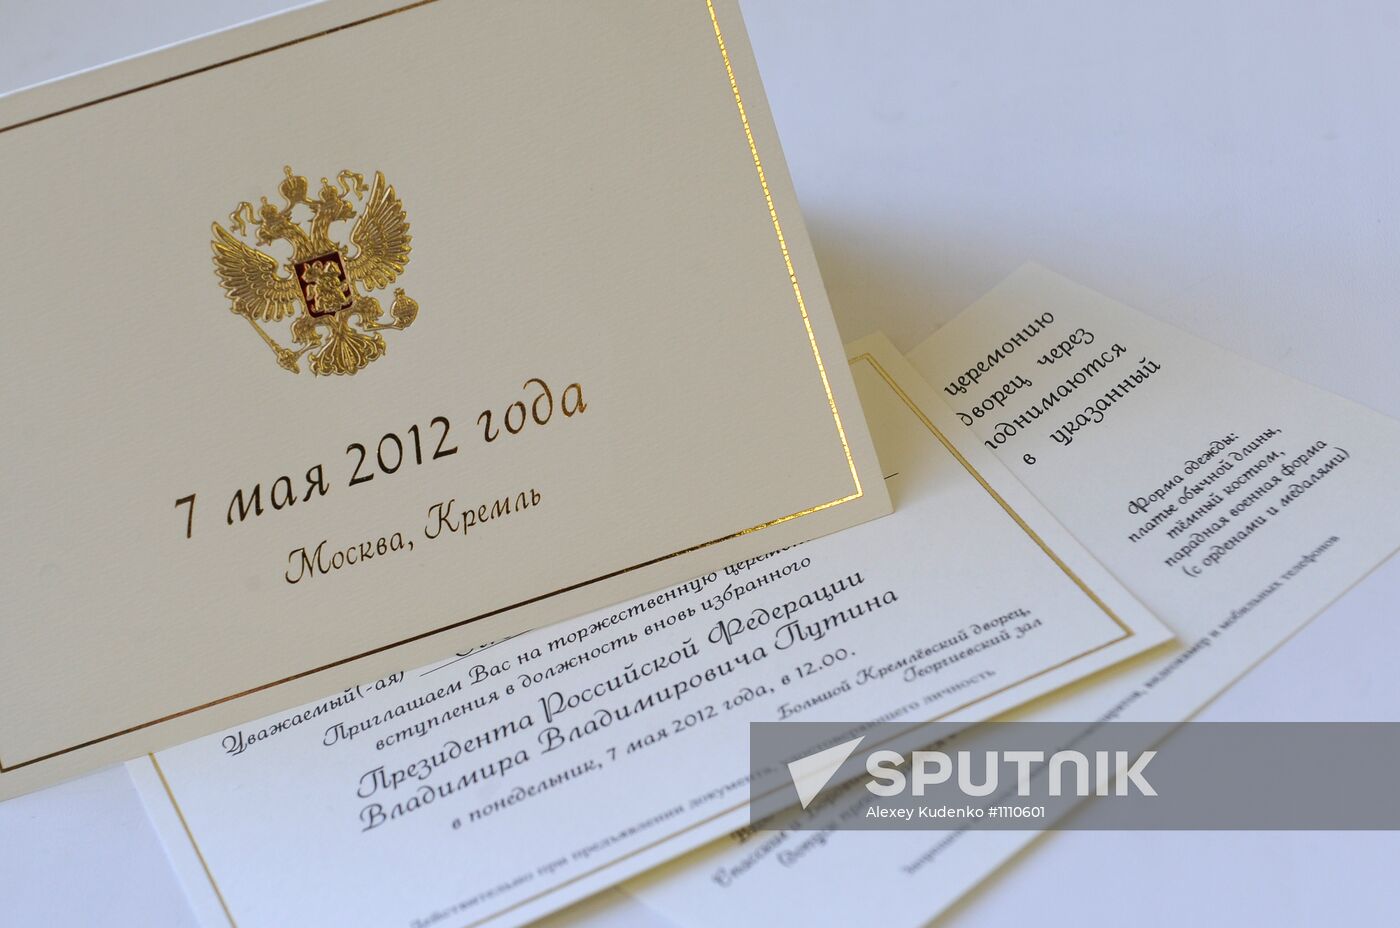 Invitation to Putin's inauguration